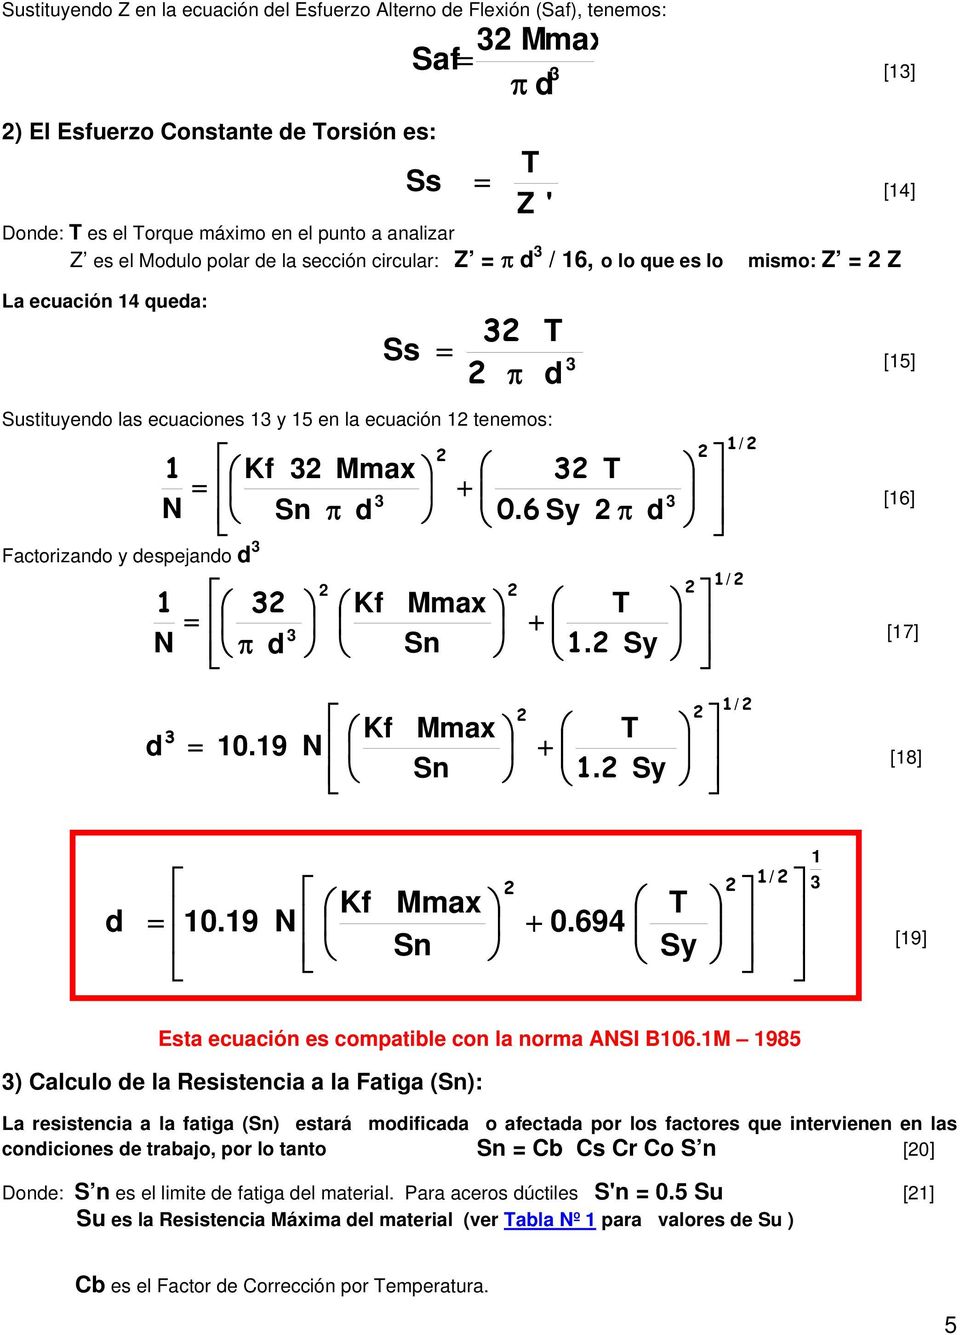 6 Sy π Factorizano y espejano Kf Mmax T = + [7] N π Sn. Sy Kf Mmax T = 0.9 N + [8] Sn. Sy = 0.9 N Kf Mmax Sn + 0.694 T Sy [9] Esta ecuación es compatible con la norma ANSI B06.